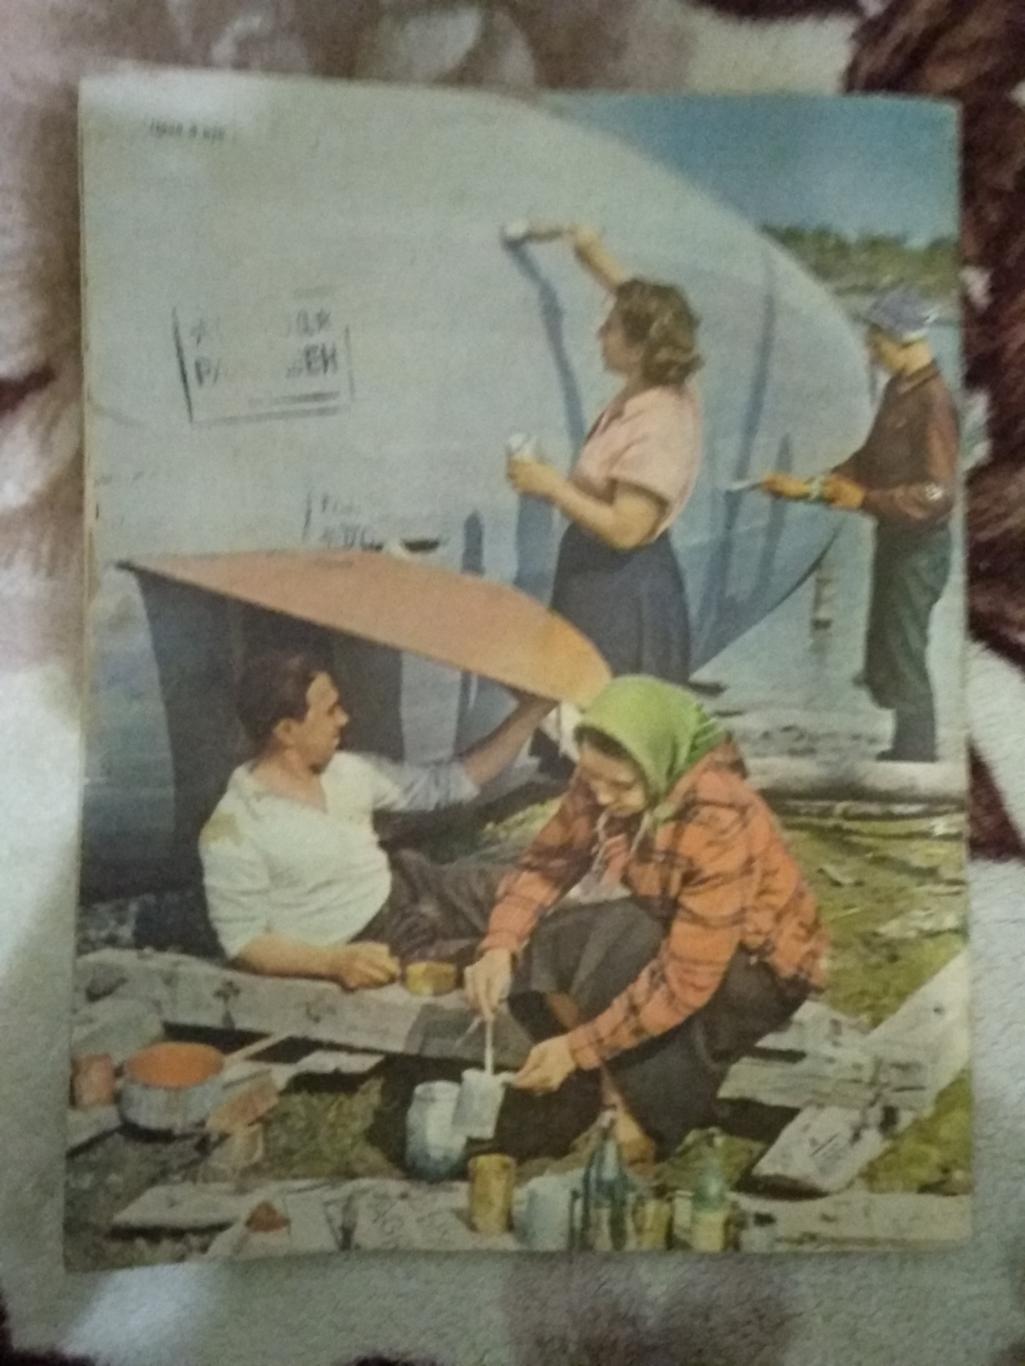 Журнал.Физкультура и спорт № 4 1958 г. (ФиС). 4